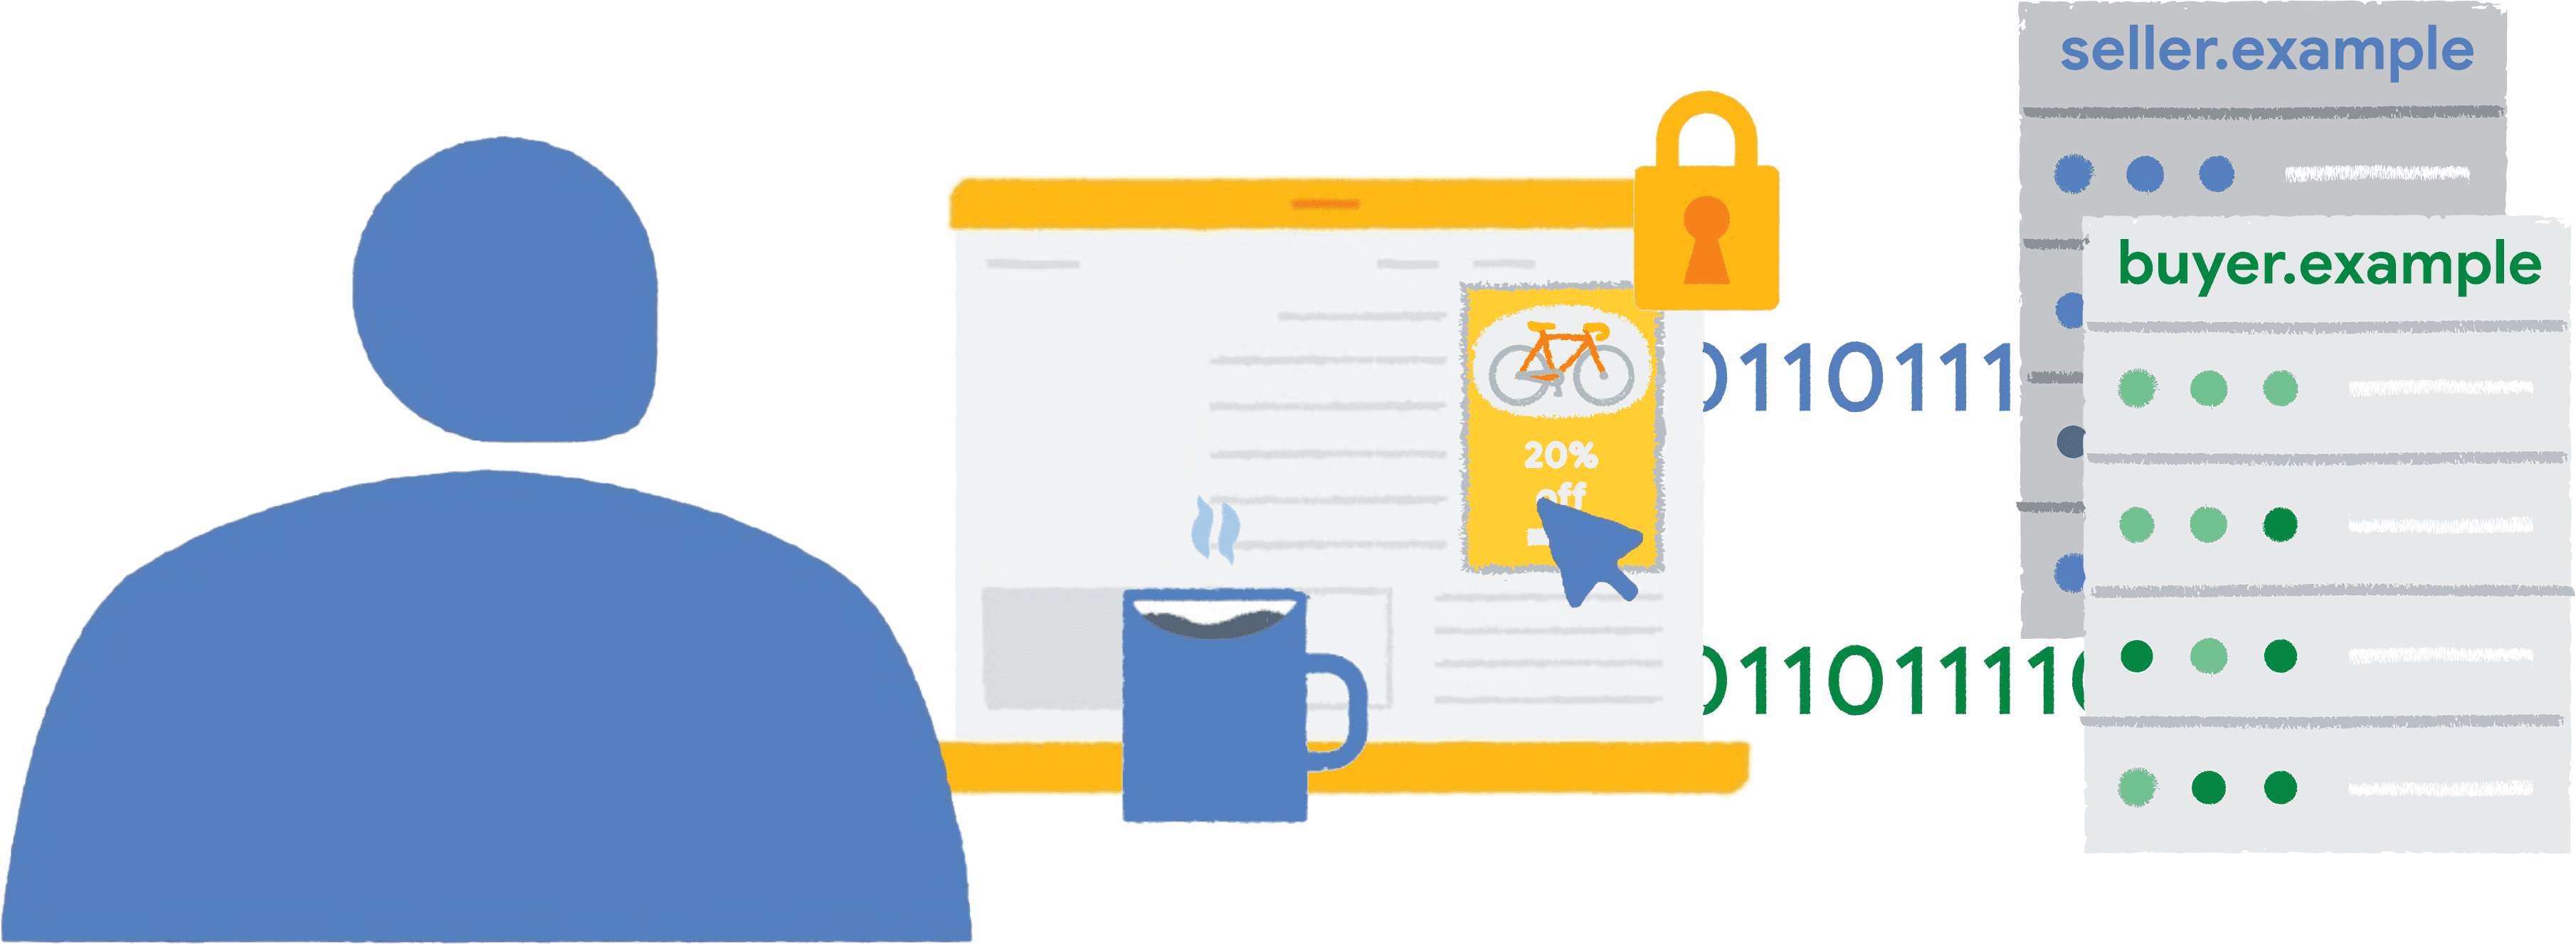 ผู้ใช้คลิกที่โฆษณาจักรยานที่ฝังกรอบล้อมรอบในเว็บไซต์ข่าว ระบบจะส่งข้อมูลรายงานไปยังผู้ขายและผู้ซื้อ